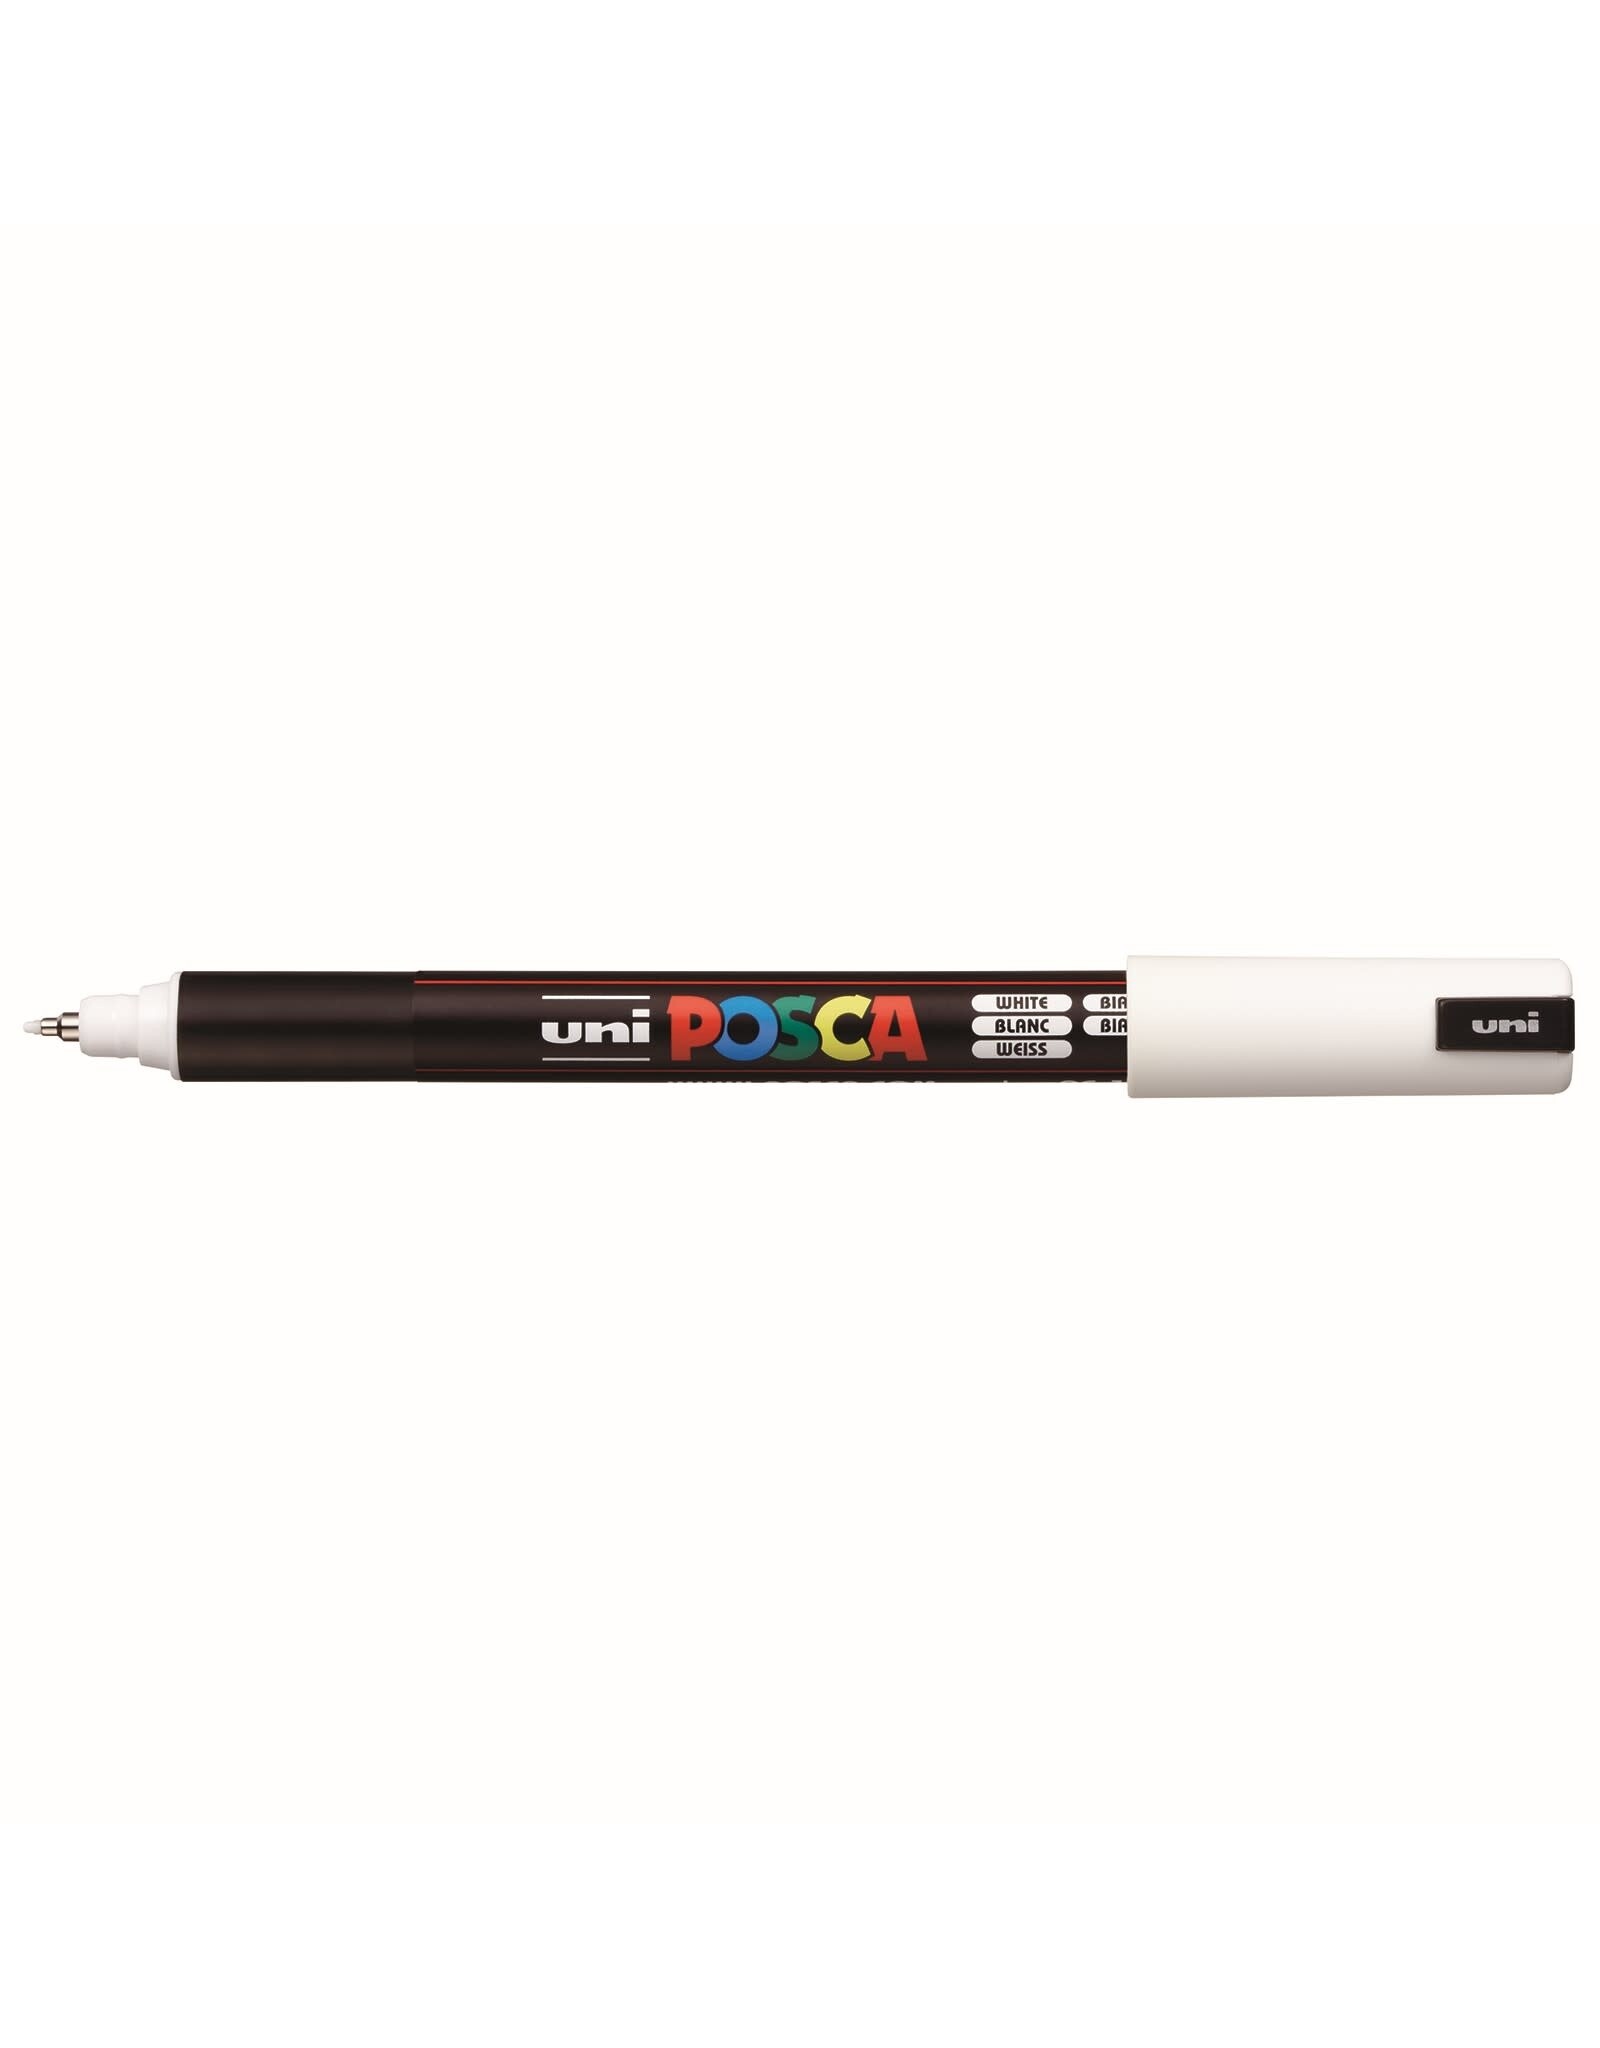 POSCA Uni POSCA Paint Marker, Extra Fine Metal Tip, White